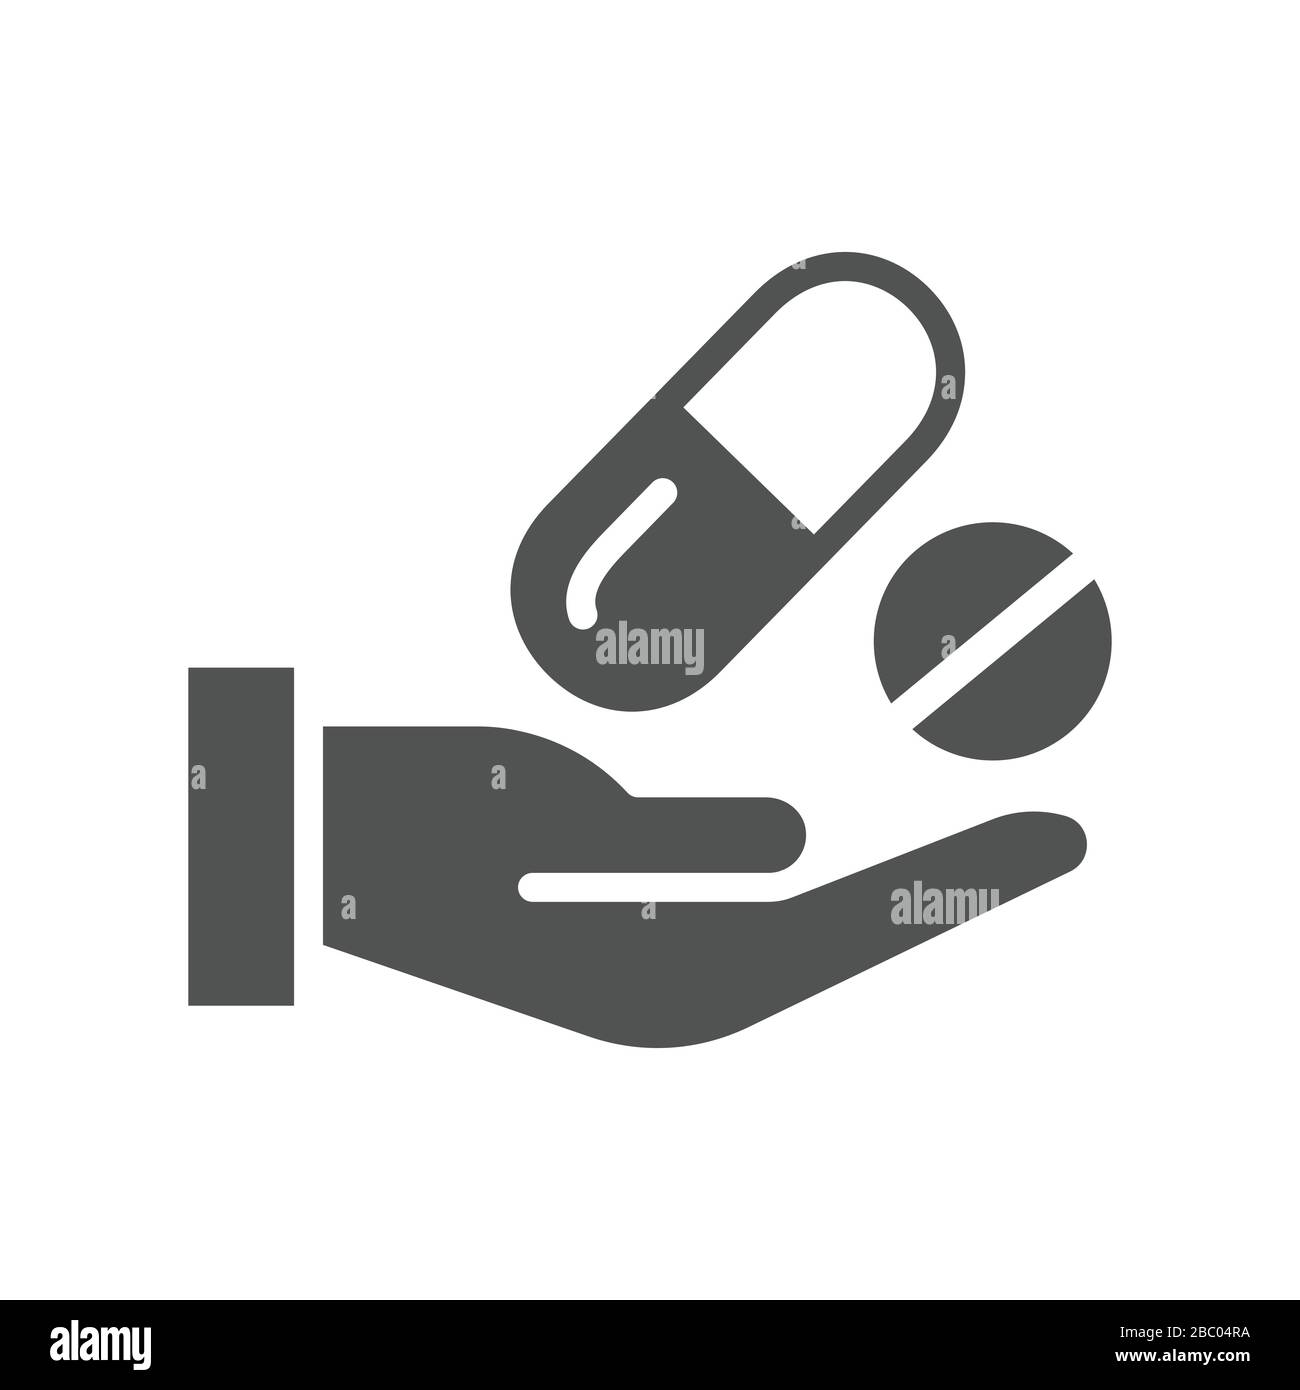 Icona farmacia e prescrizione con immagine farmaceutica che raffigura l'icona farmacia Illustrazione Vettoriale